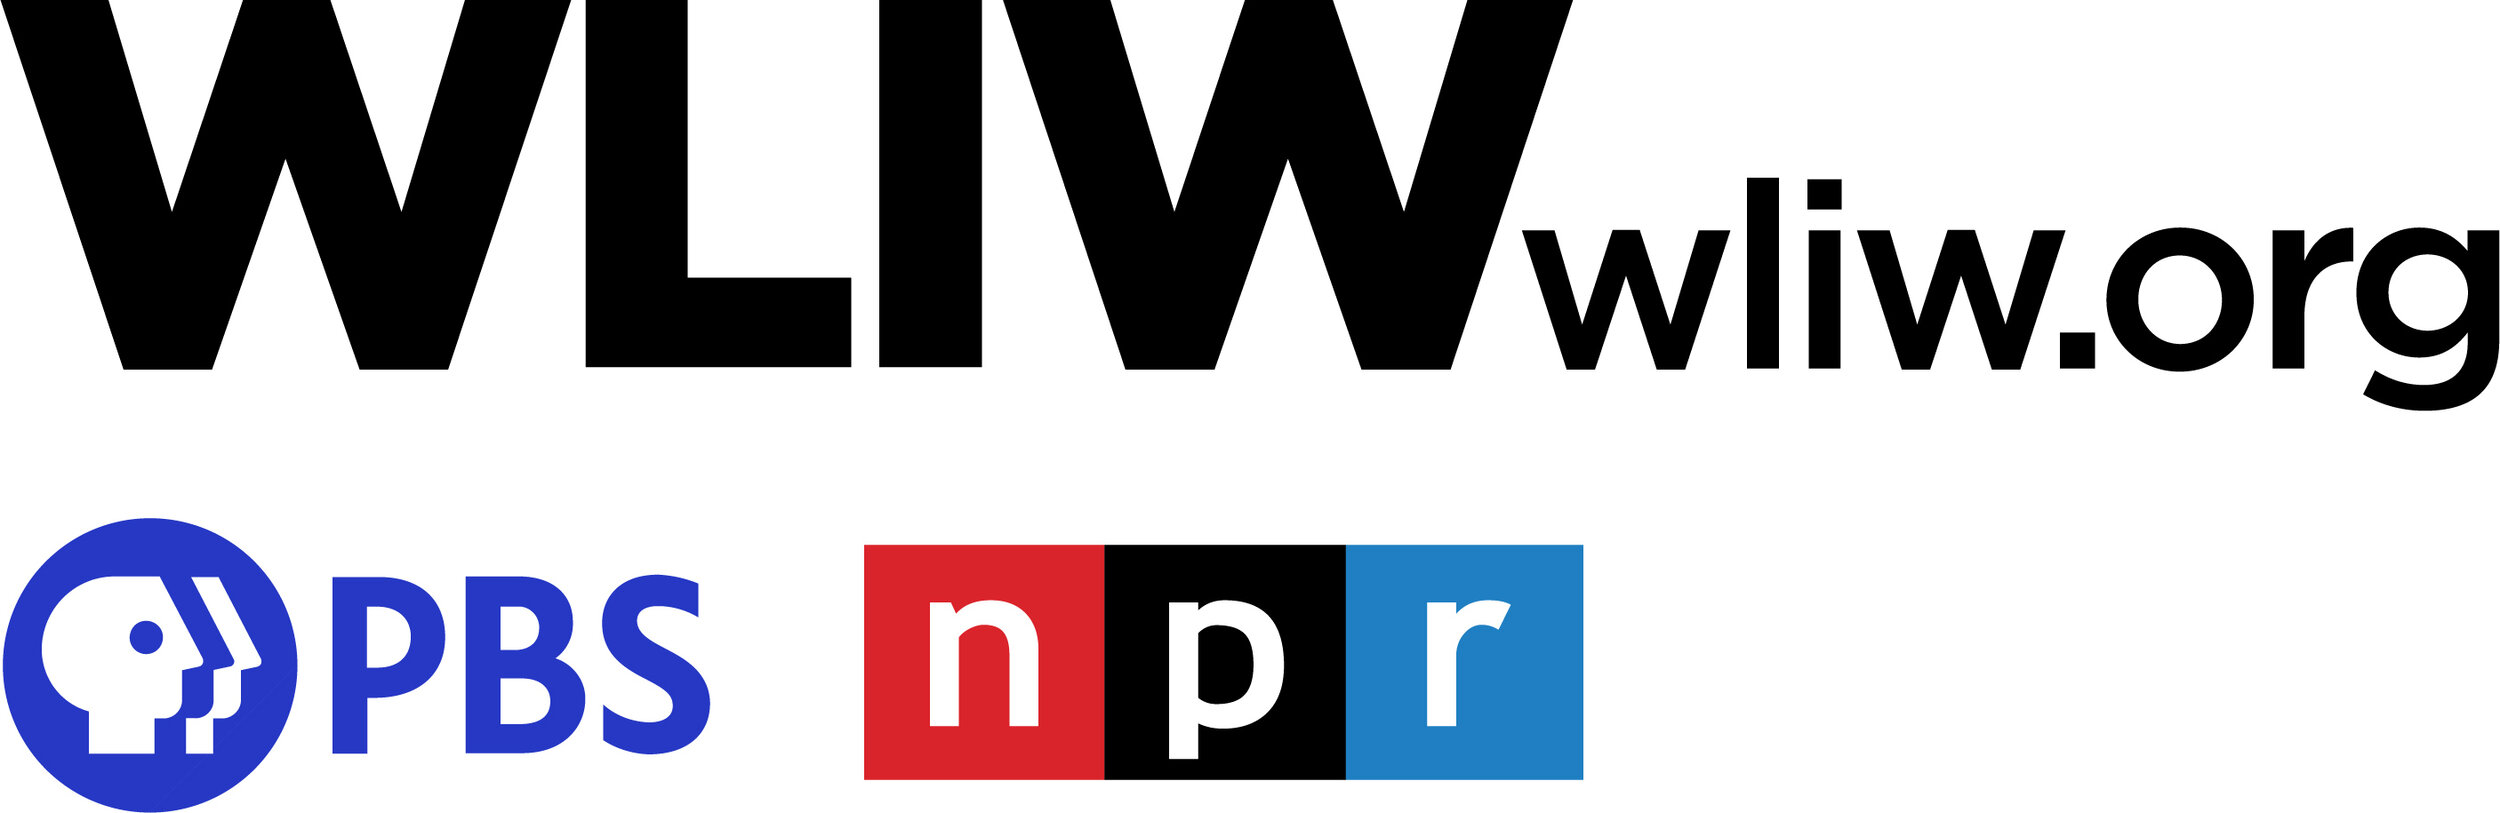 WLIW FM URL PBS NPR for screen.jpg